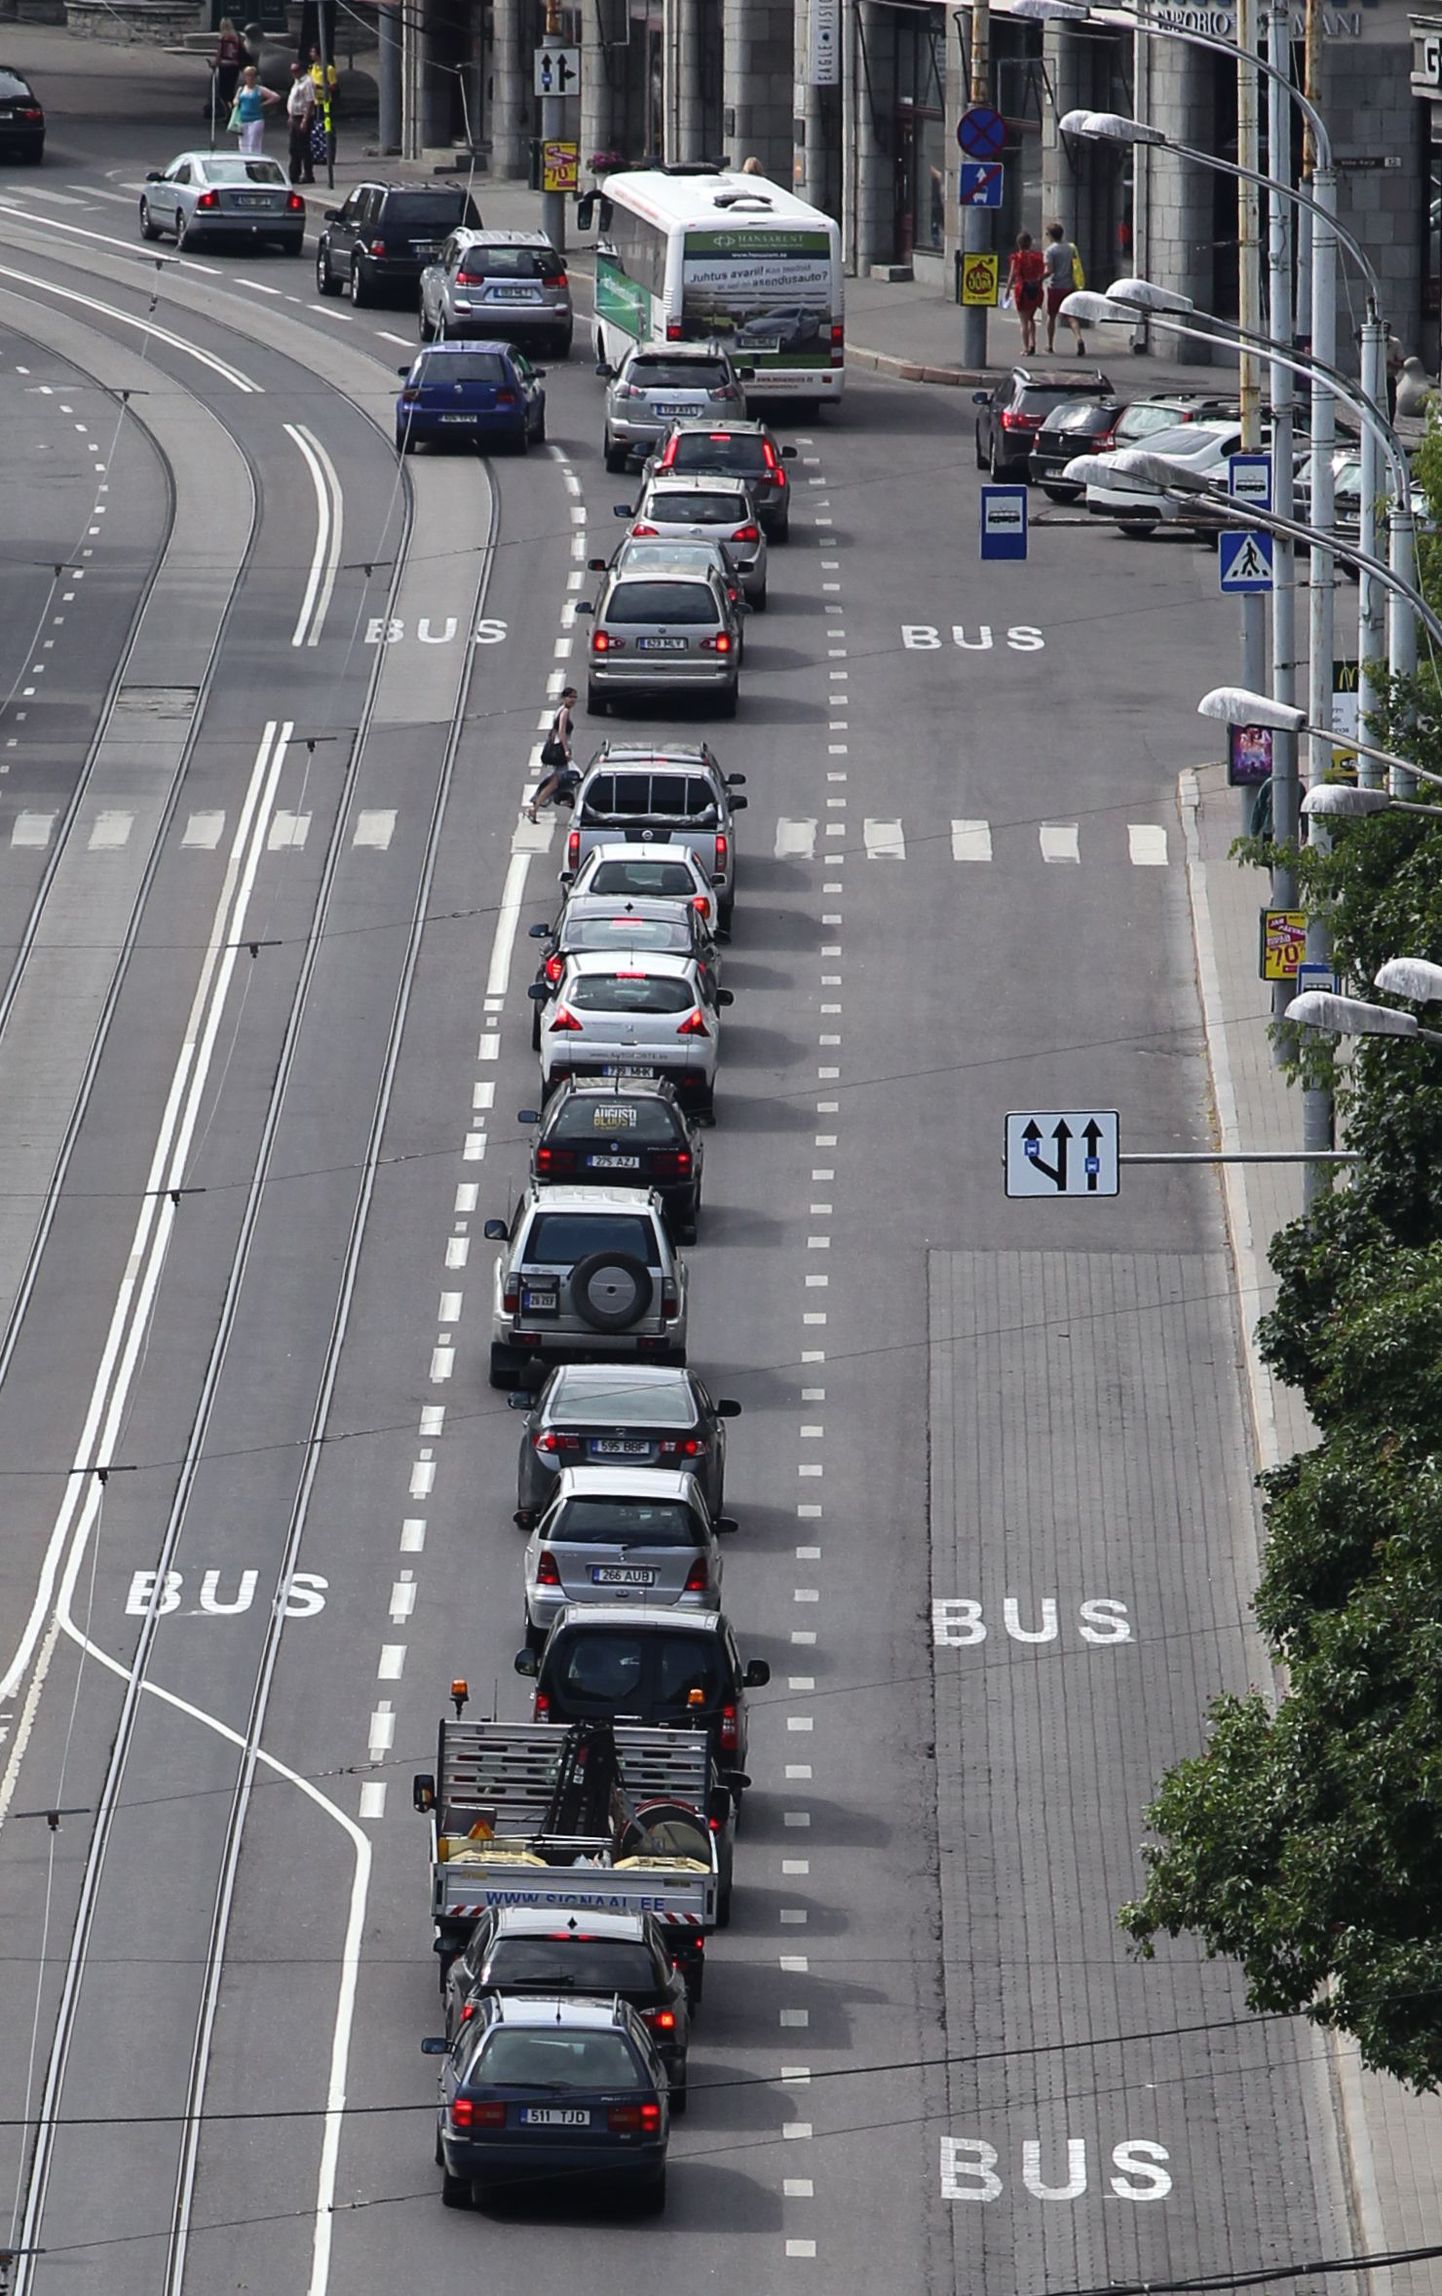 Viru ringile, Mere puiesteele ja Pärnu maanteele on maha märgitud bussirajad, mis jätavad tavasõidukitele üsna ahta liikumisruumi.